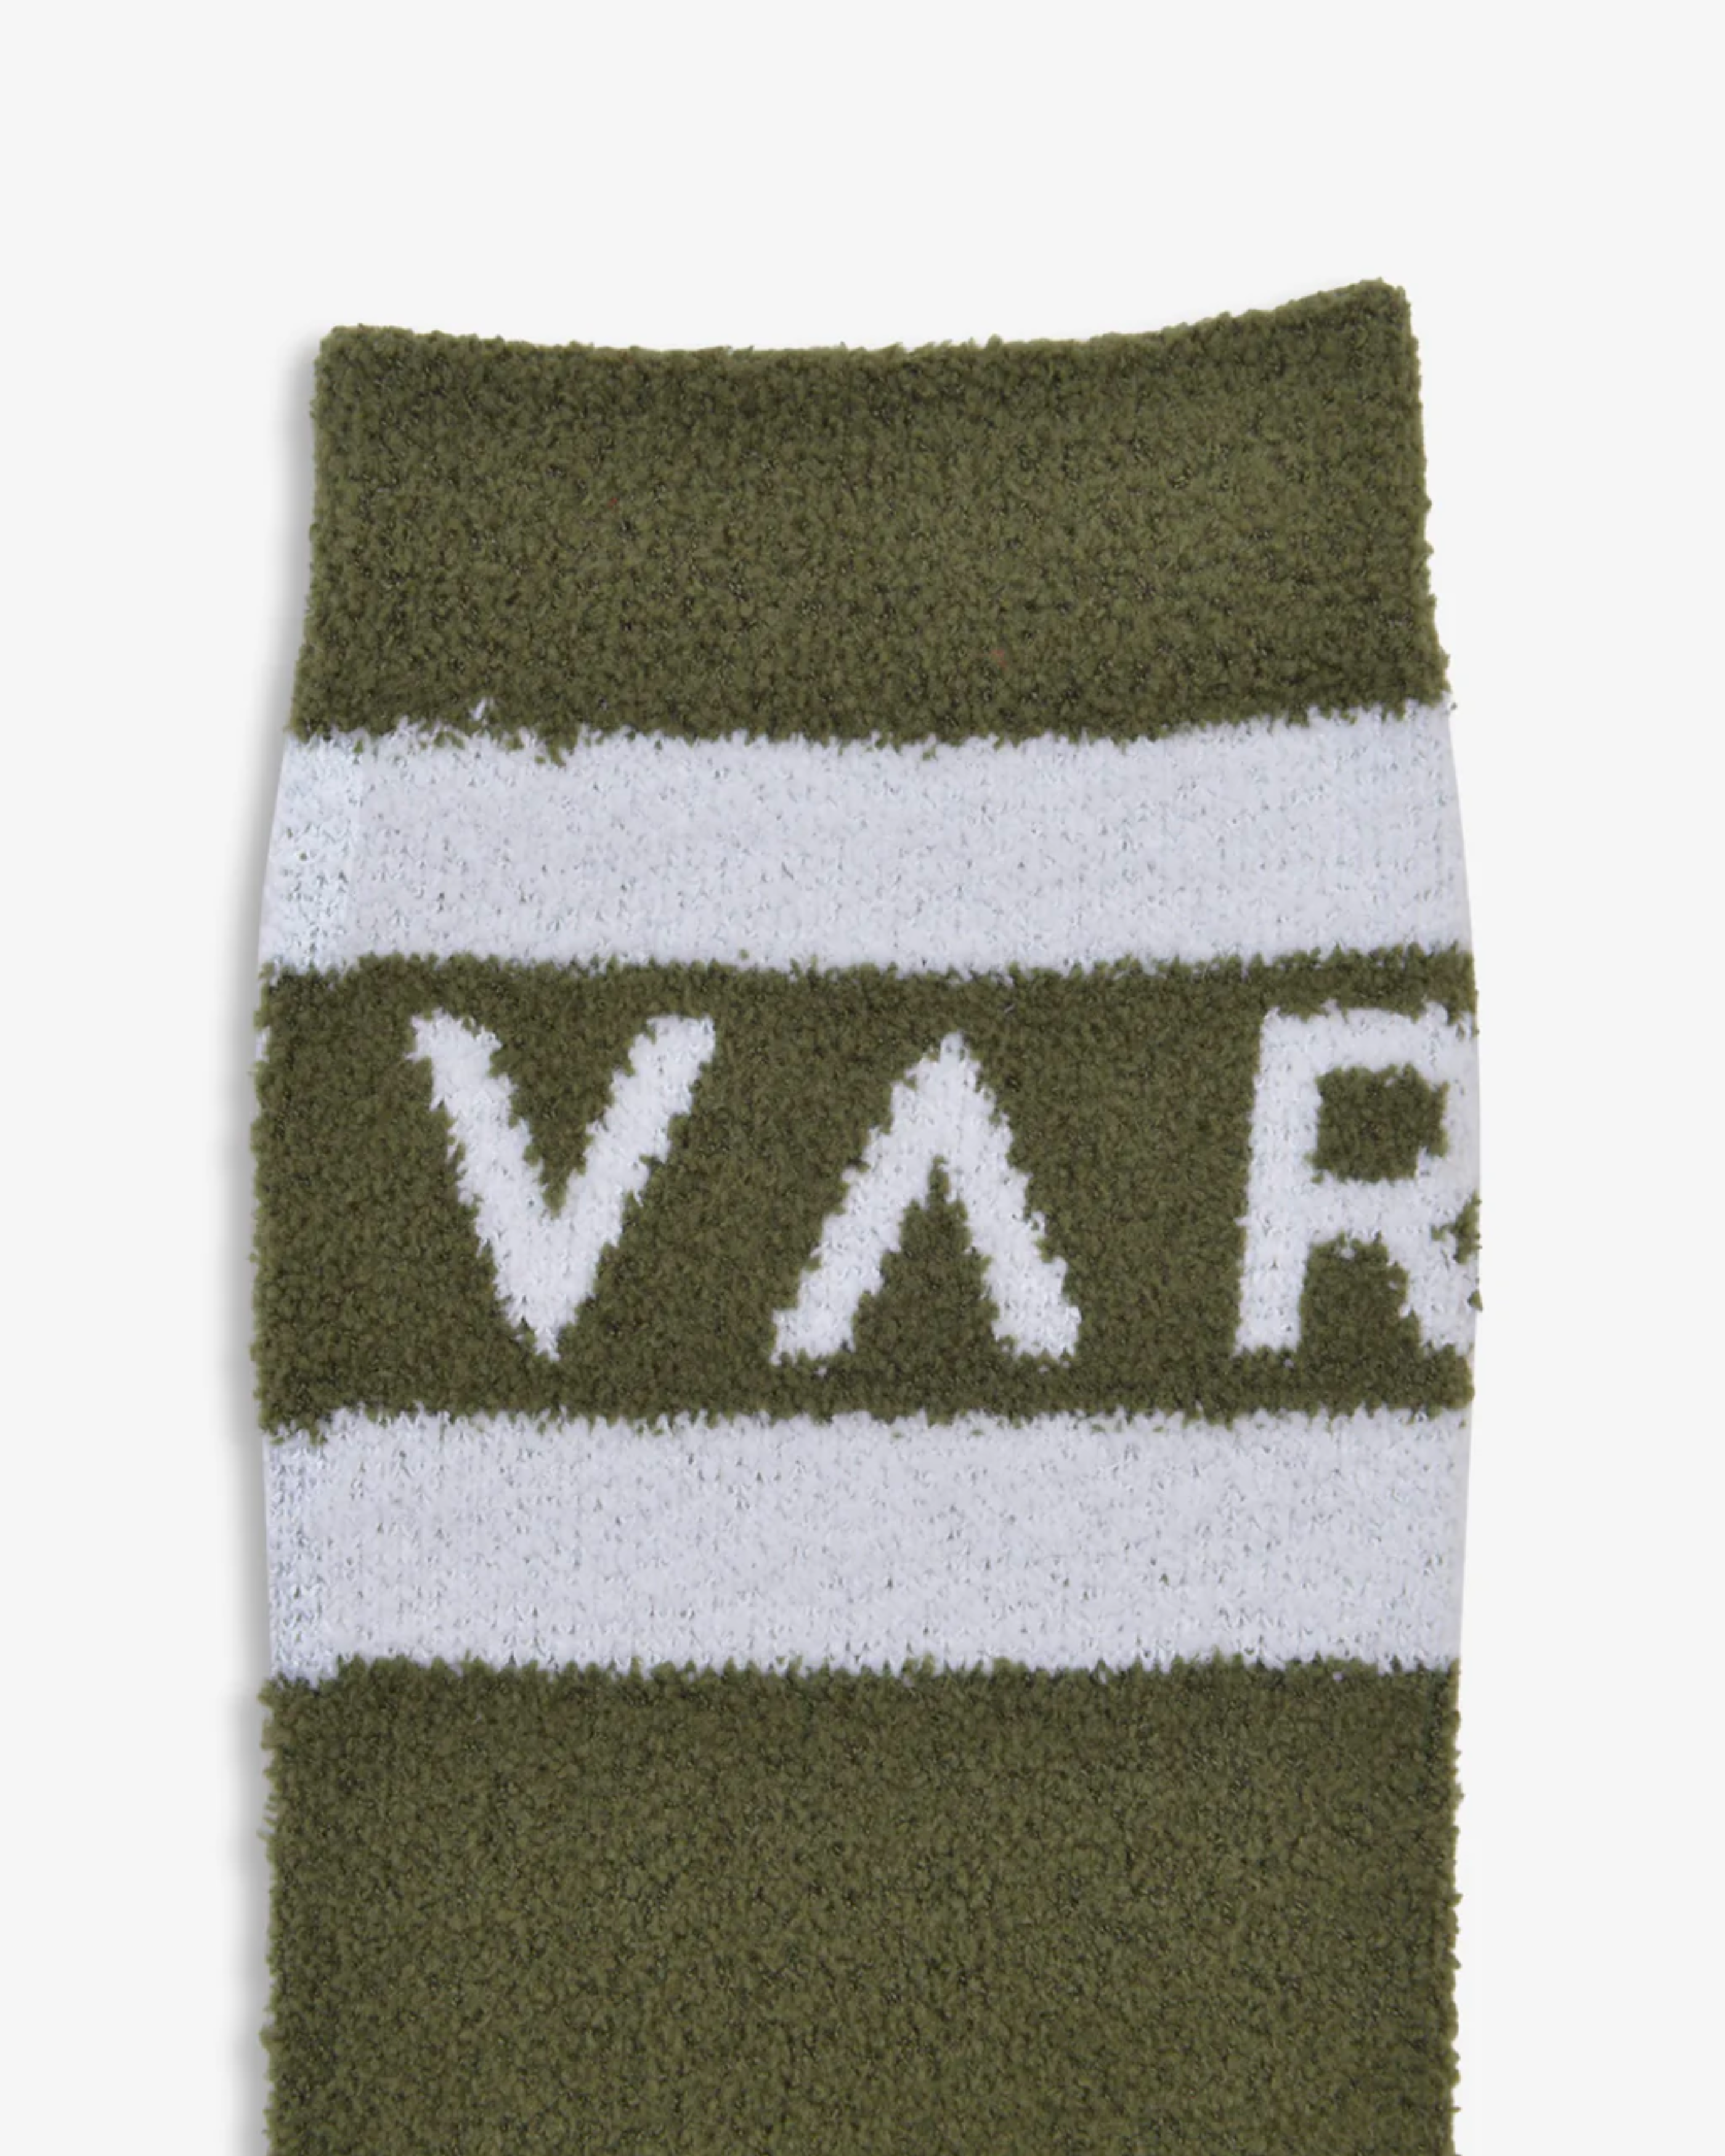 Varley Spencer Sock in Dark Olive/Egret